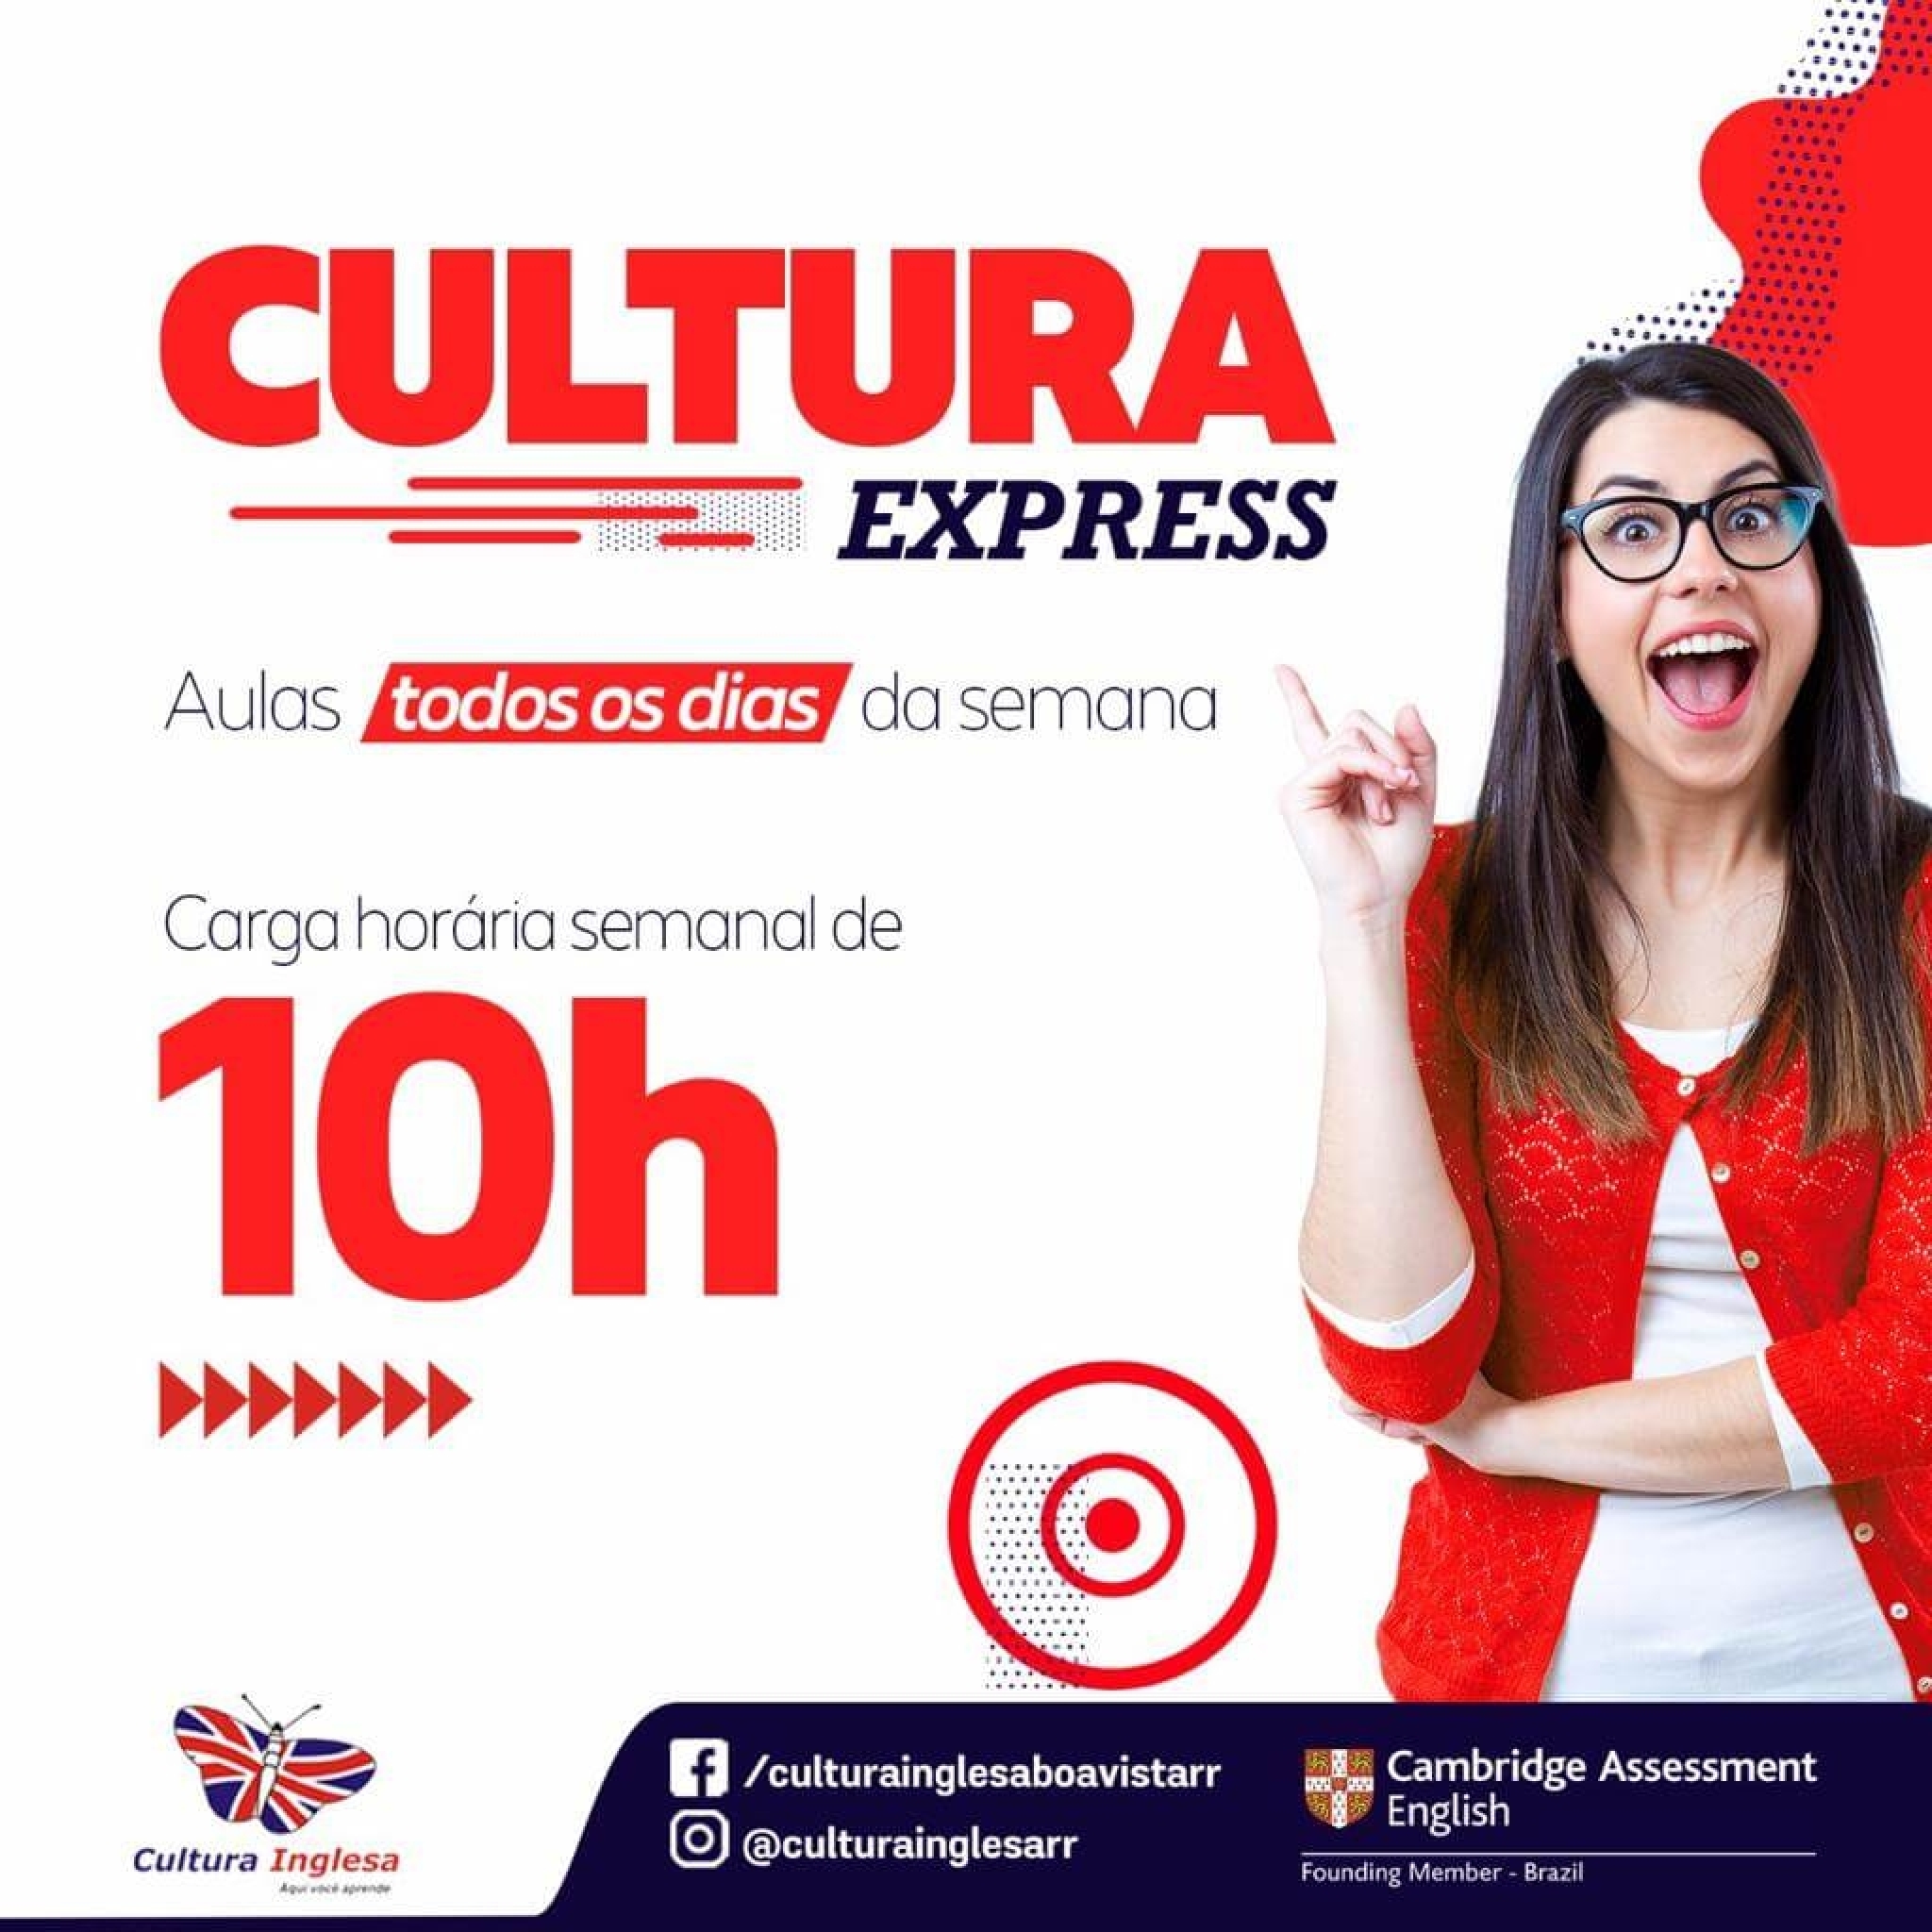 Cultura Express - Cultura Inglesa Boa Vista